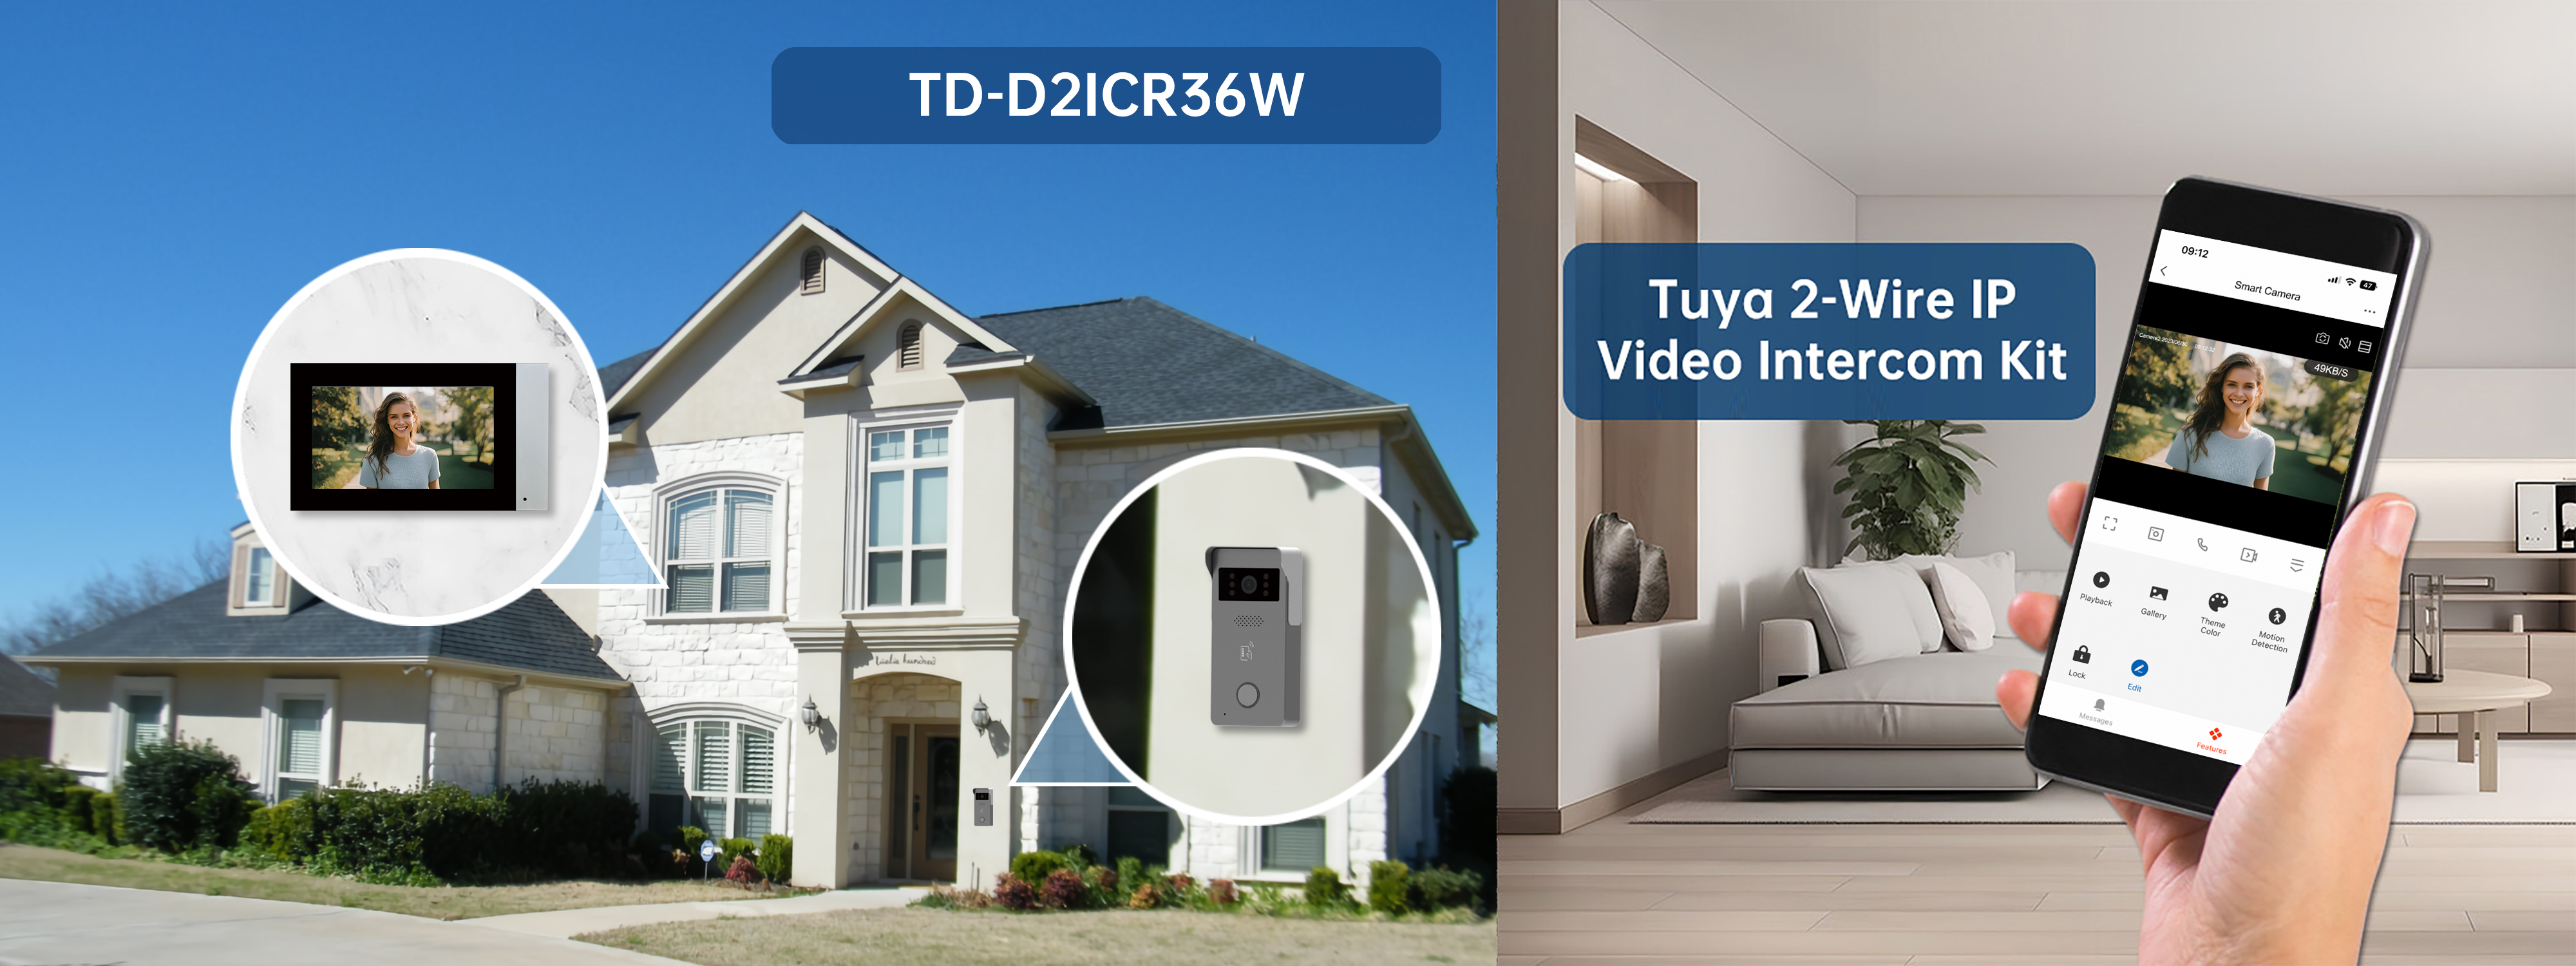 Trudian TD-D2ICR36W Tuya 2-Wire IP Video Intercom Kit